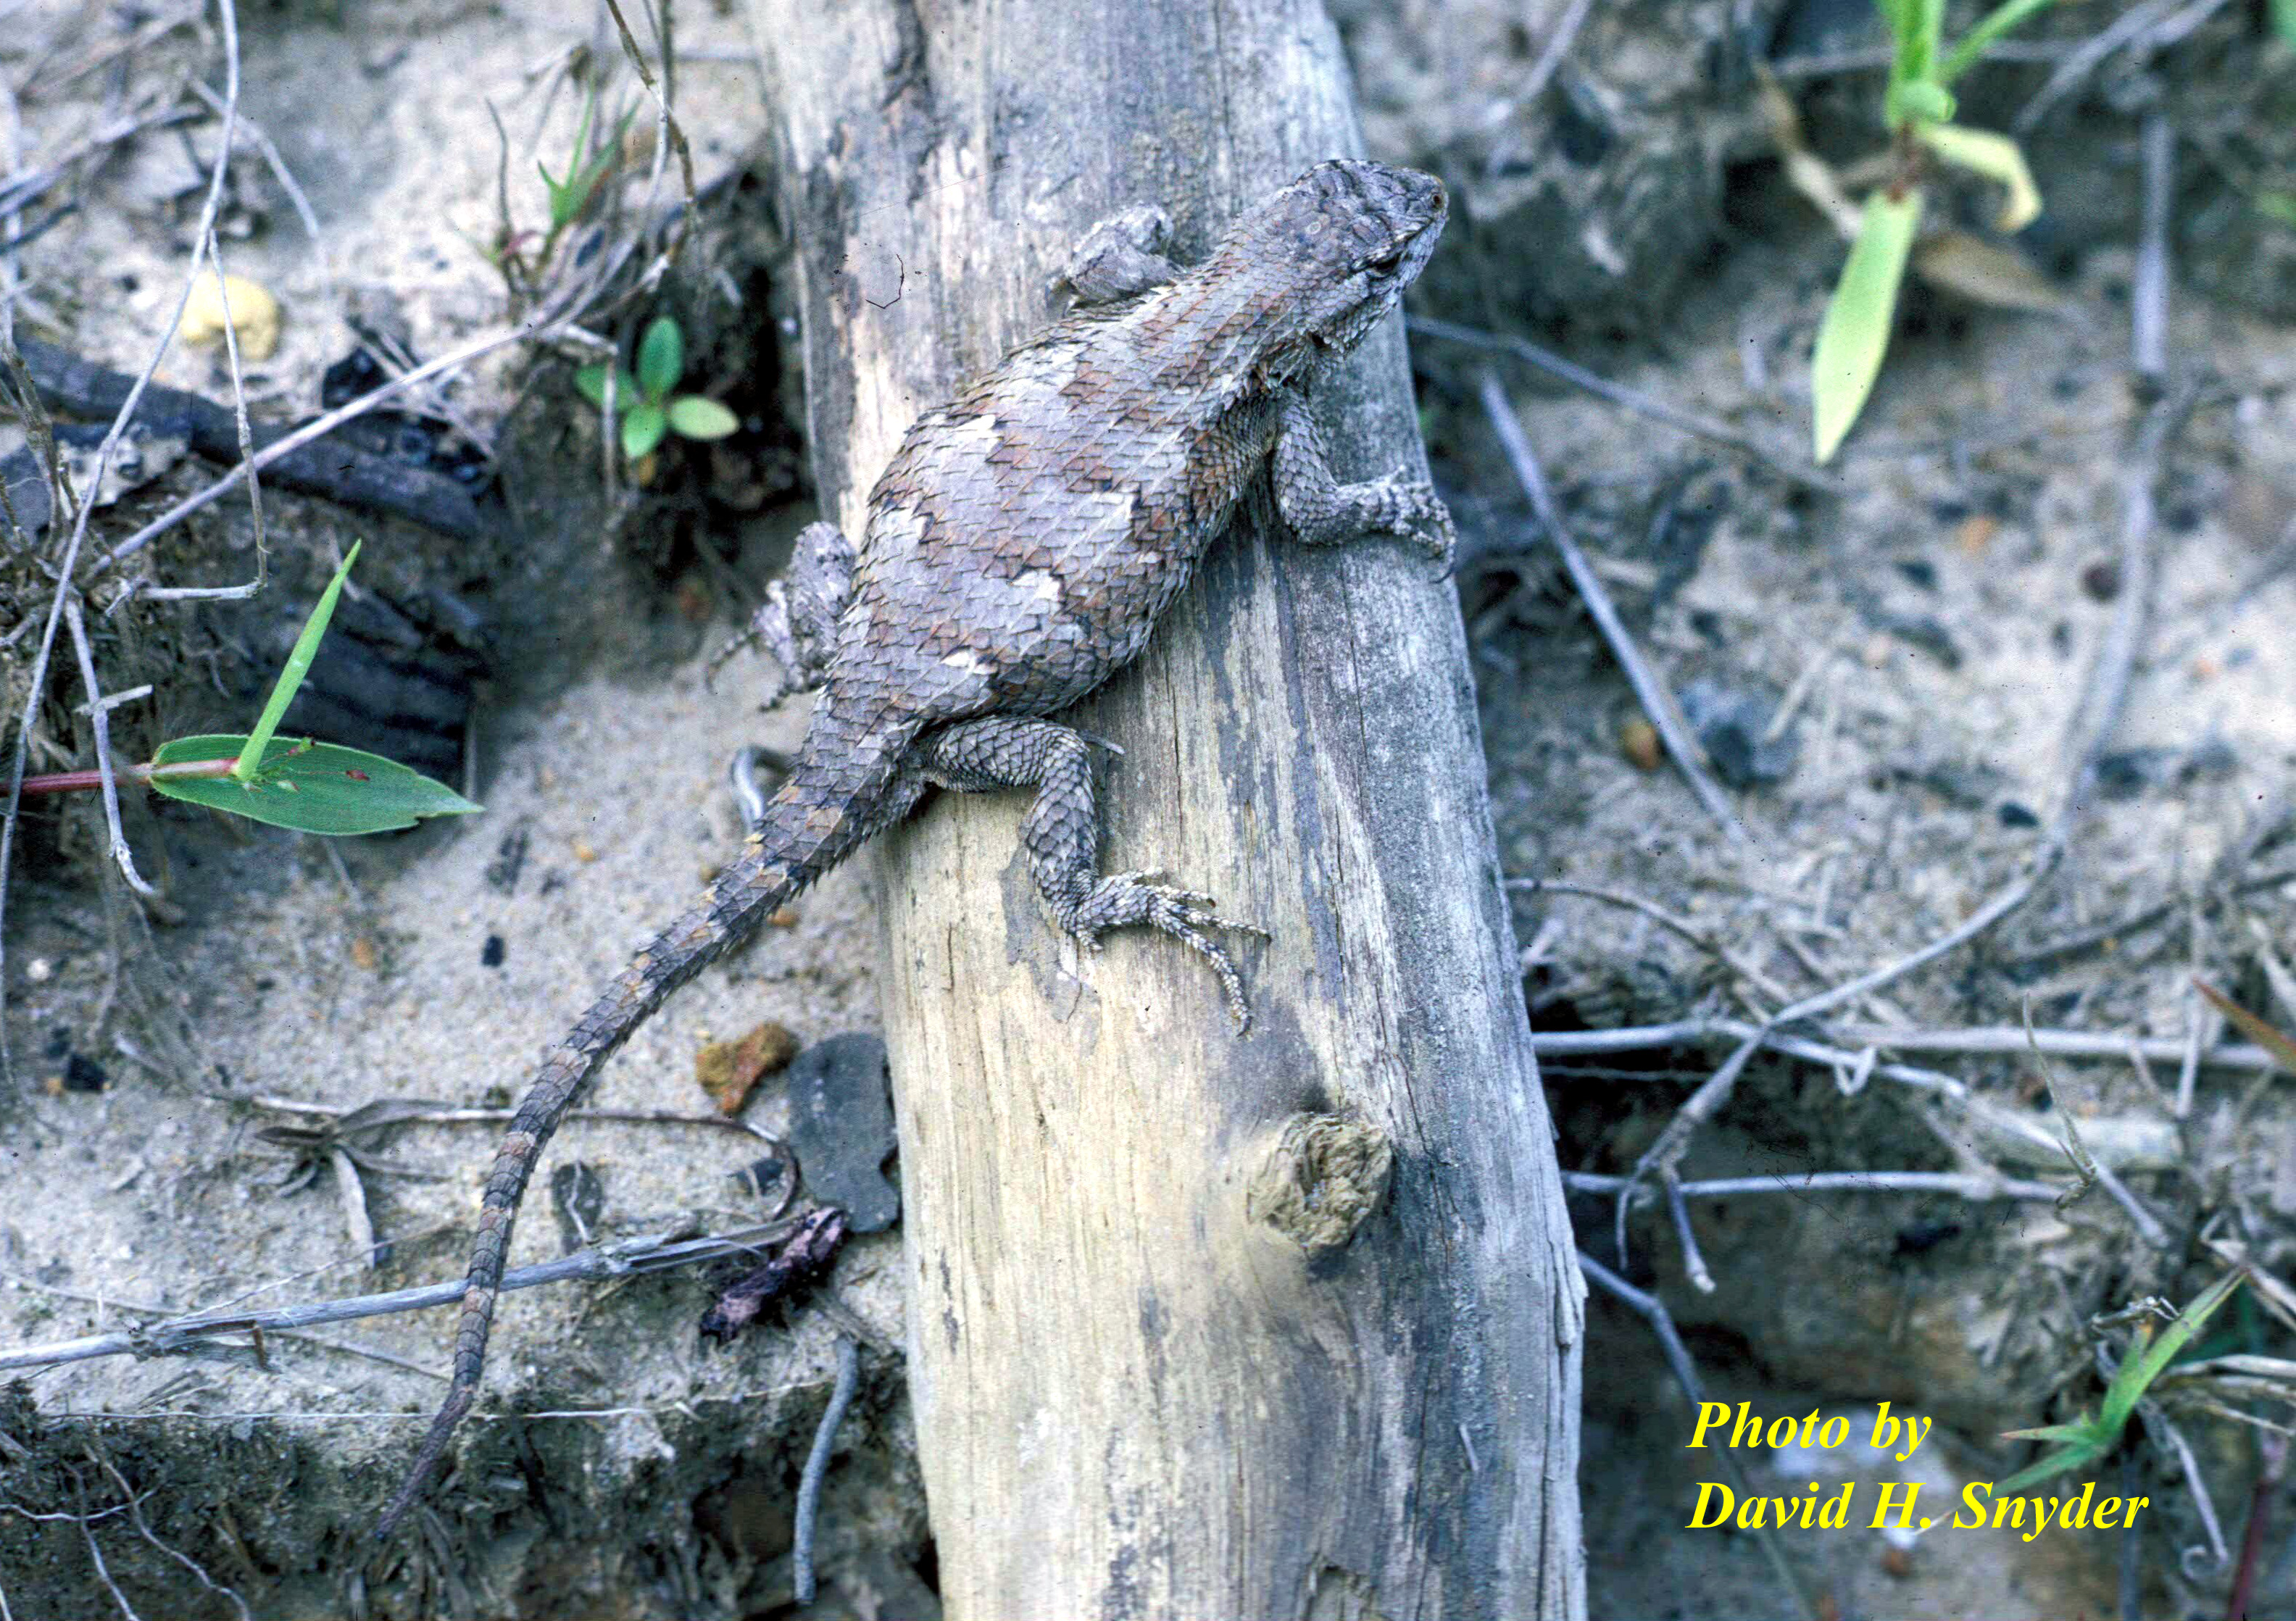 Sceloporus undulatus (Bosc and Daudin) - Eastern Fence Lizard